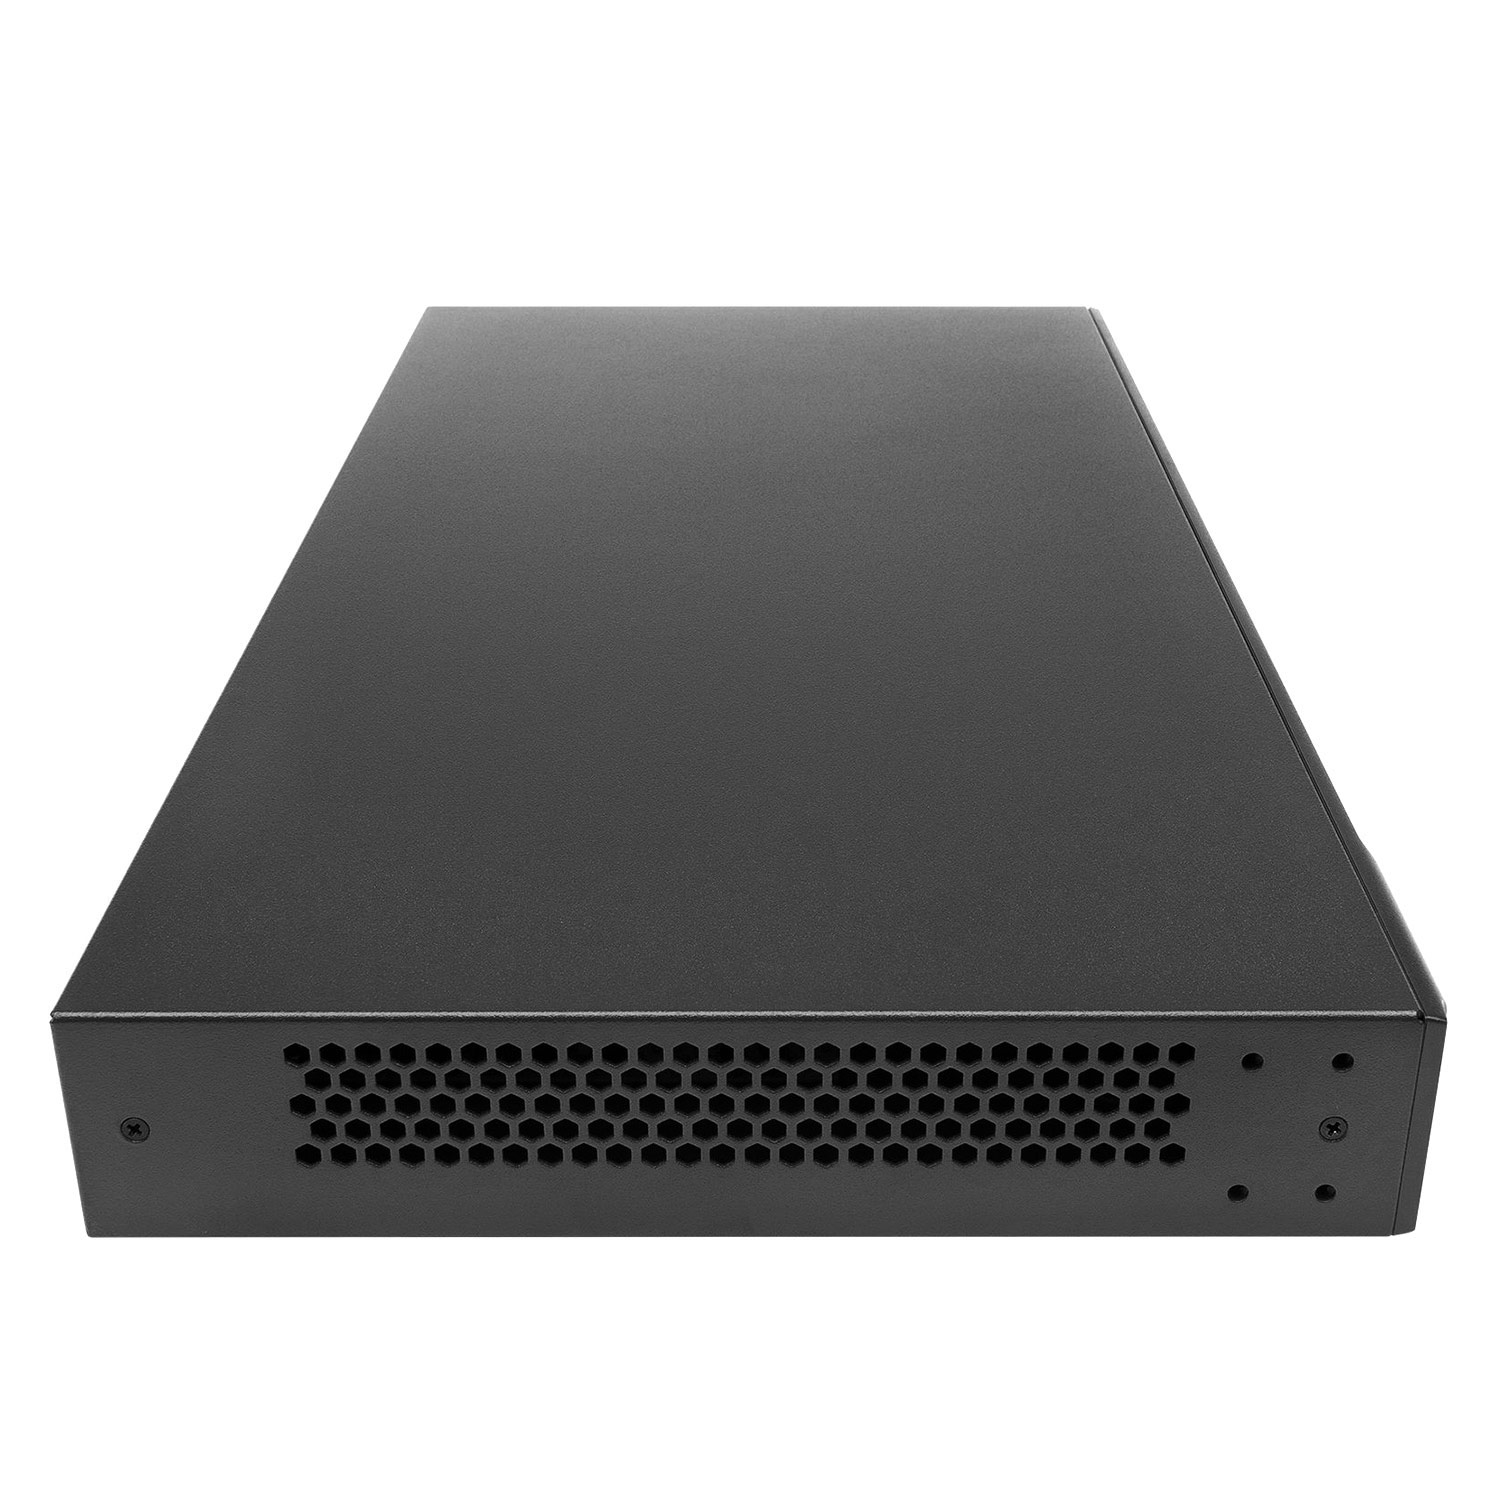 TP-Link  TL-ER6120 - Router VPN SafeStream 2 Cổng WAN Gigabit